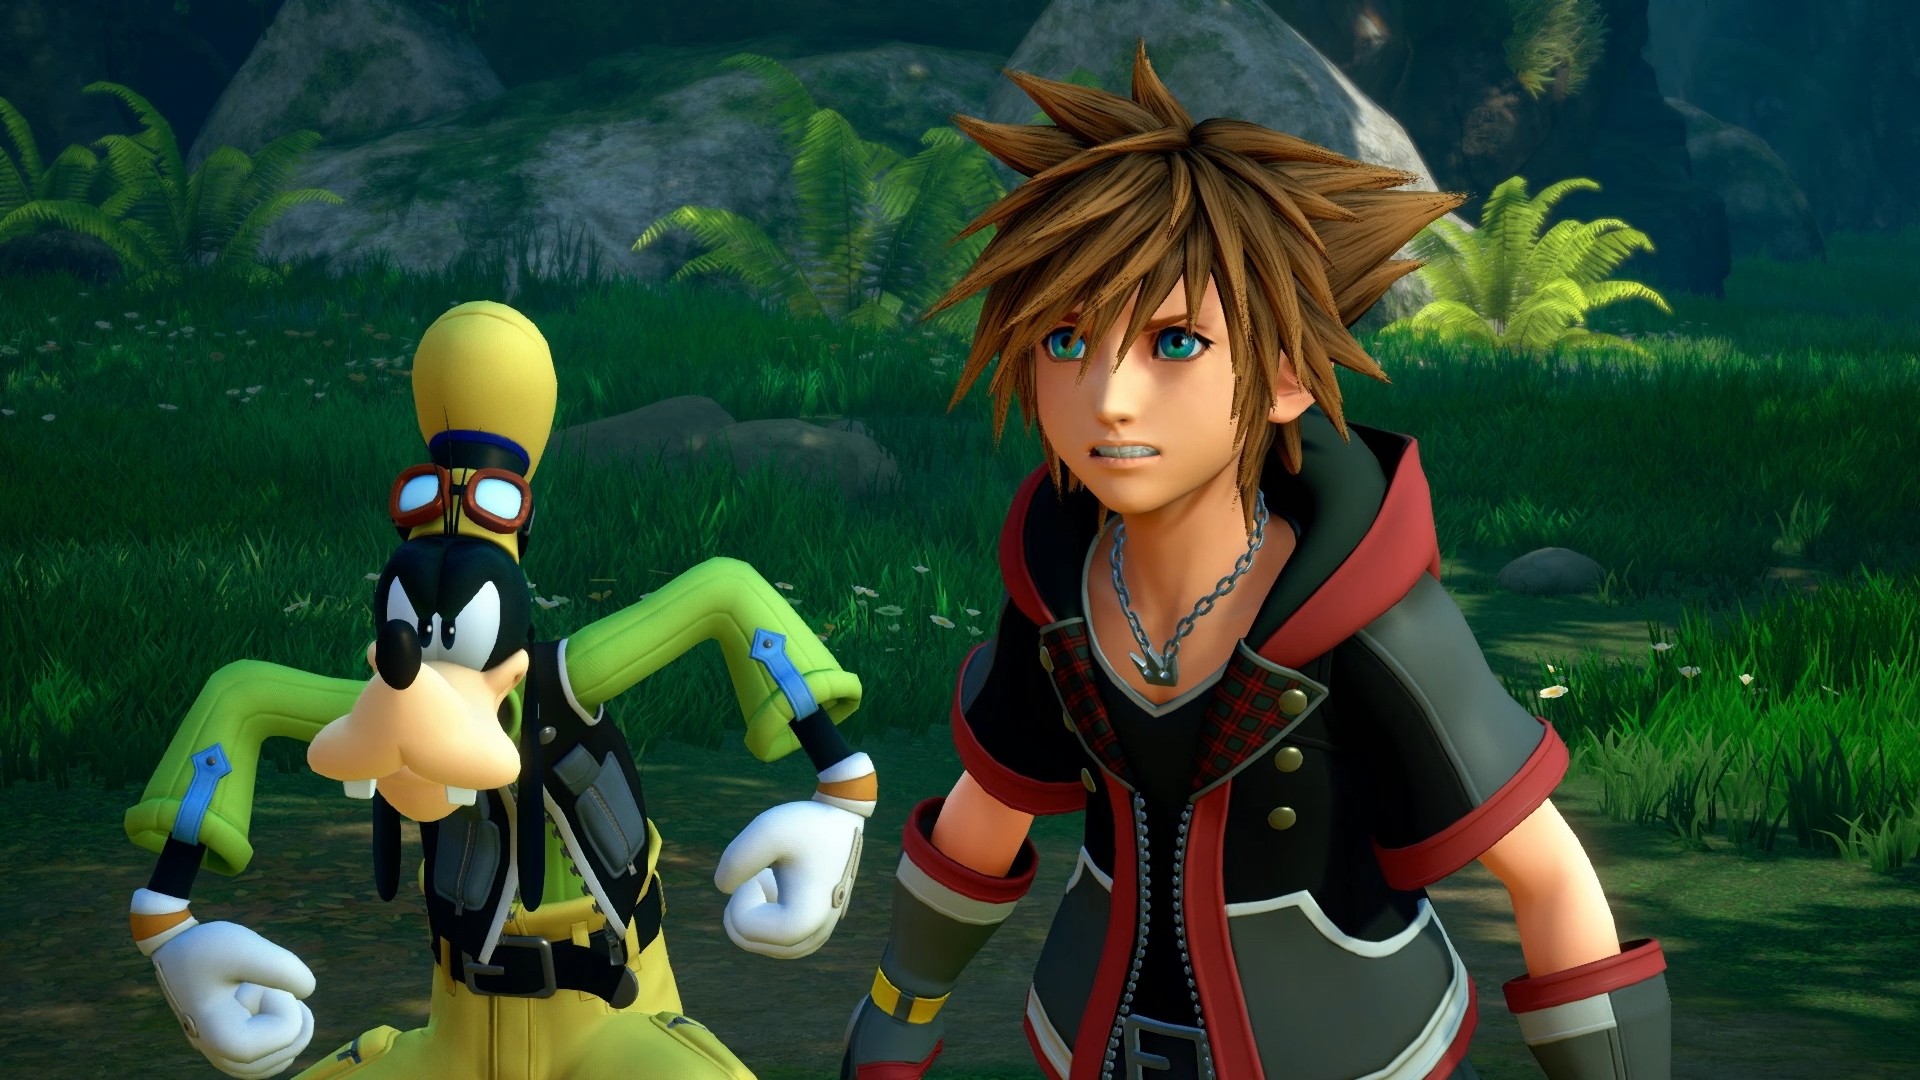 Инсайдеры: Square Enix работает над мультсериалом по Kingdom Hearts для Disney+